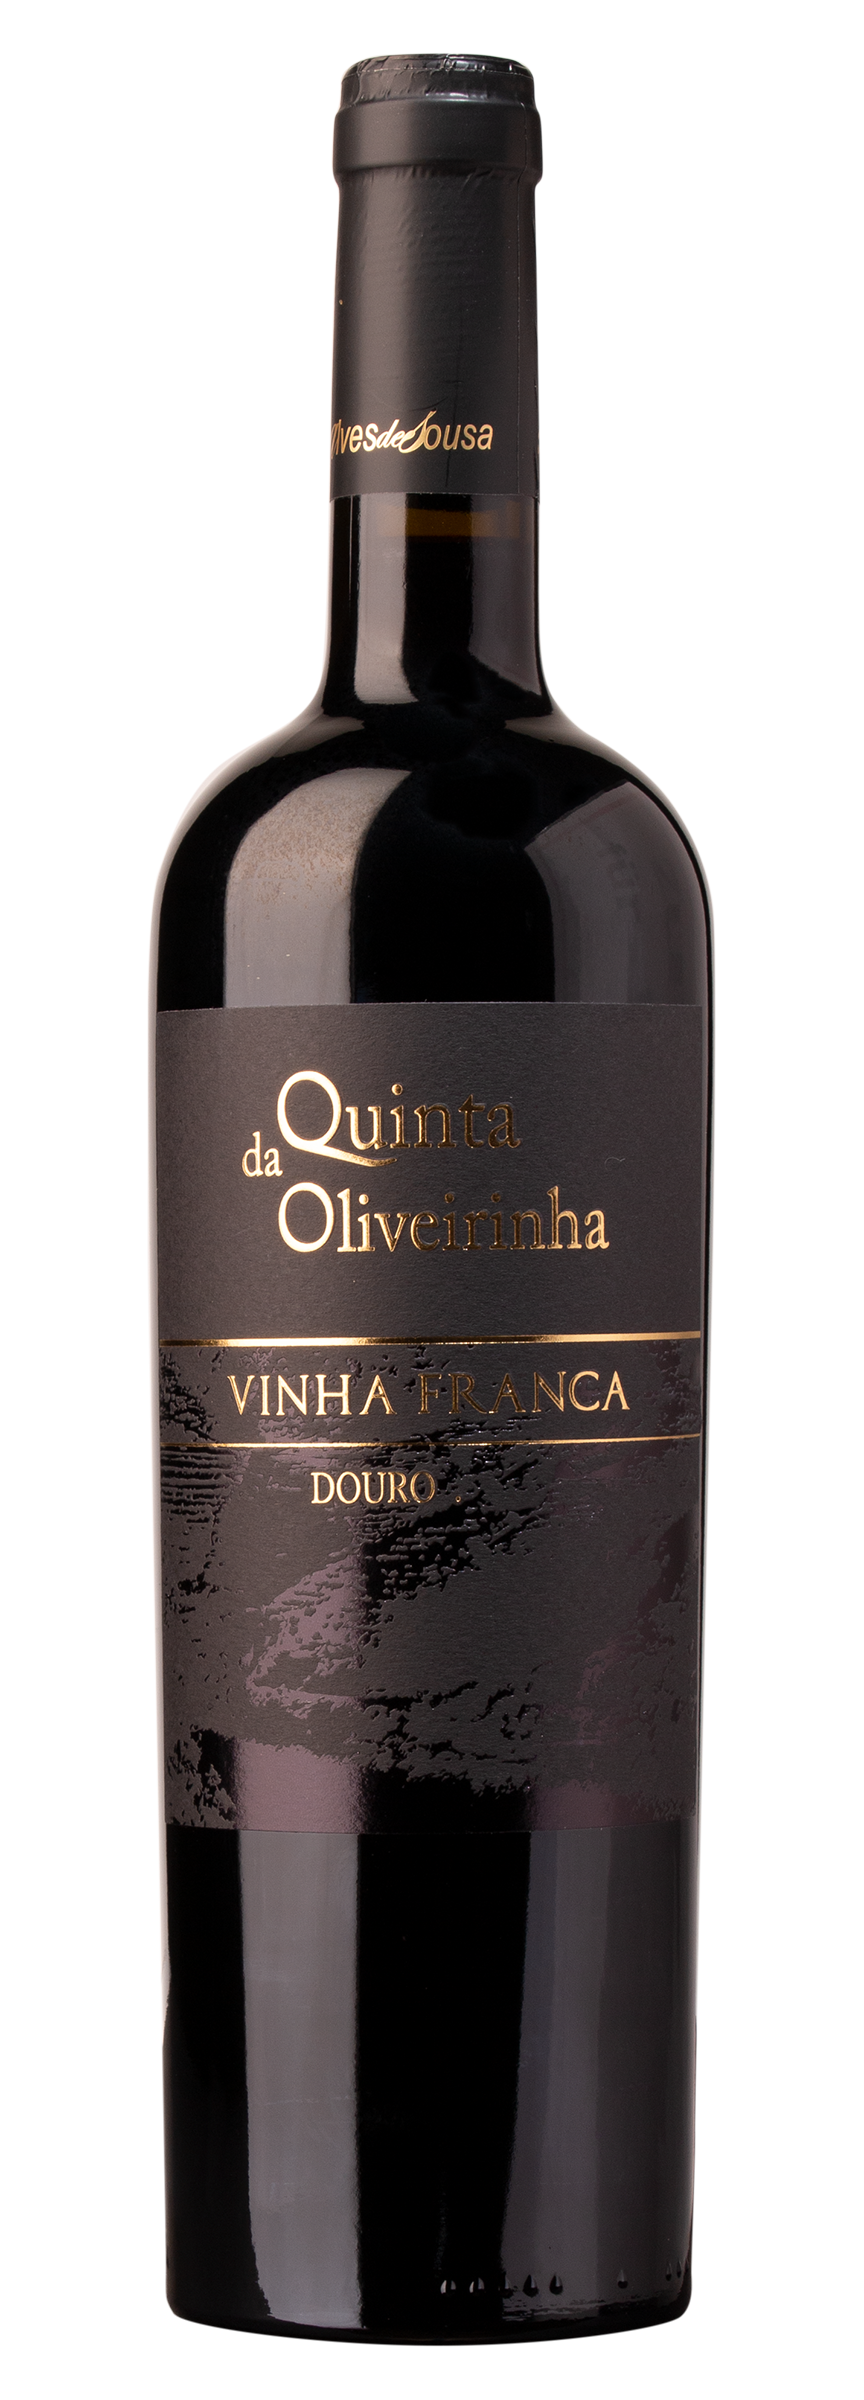 Quinta da Oliveirinha „Vinha Franca“ DOC Douro, tinto